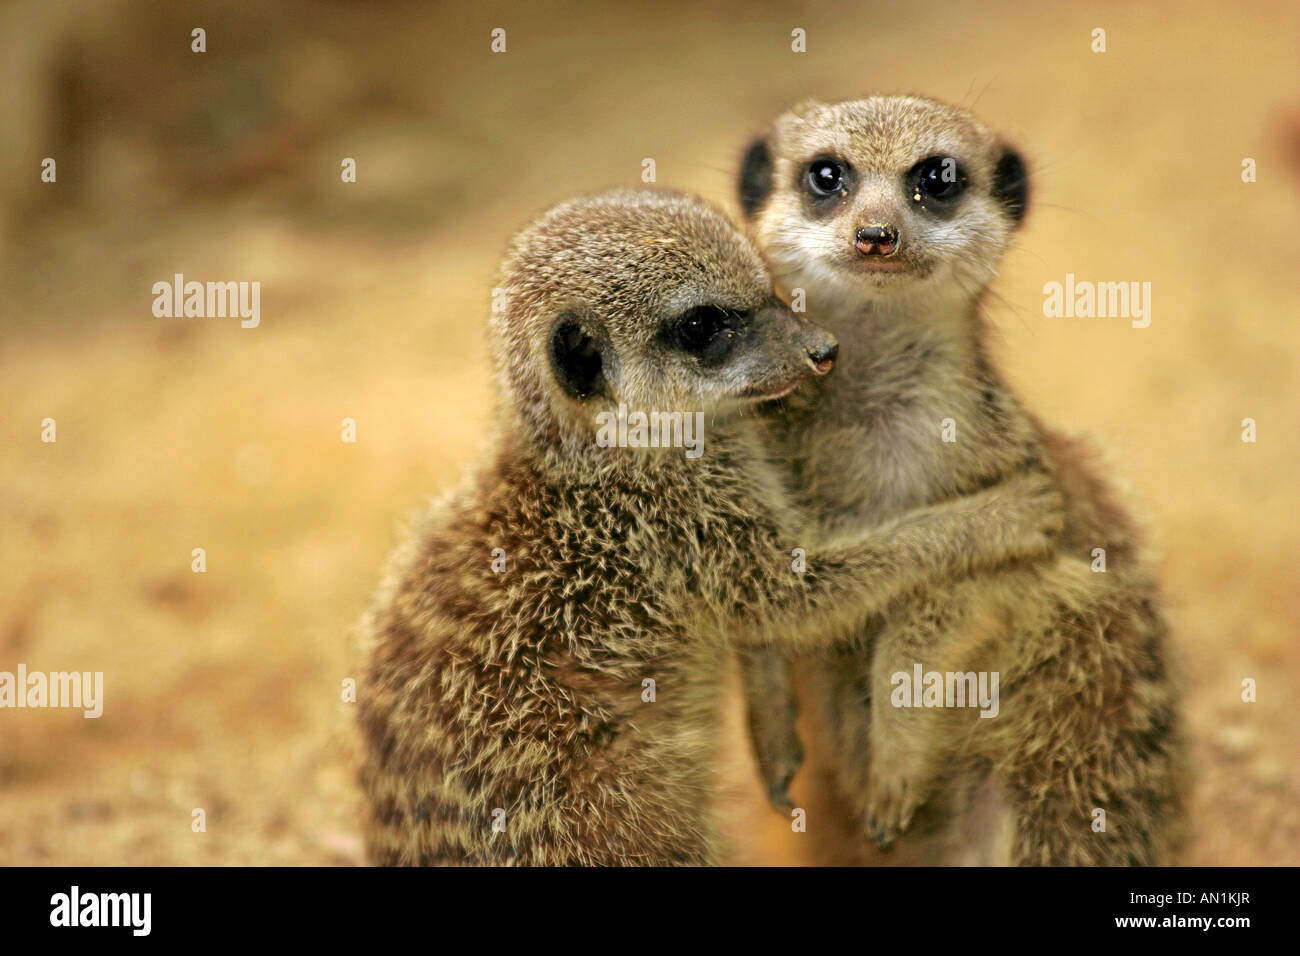 zwei junge Erdmaennchen Suricata suricatta umarmen sich two young suricates Suricata suricatta embracing each other Stock Photo